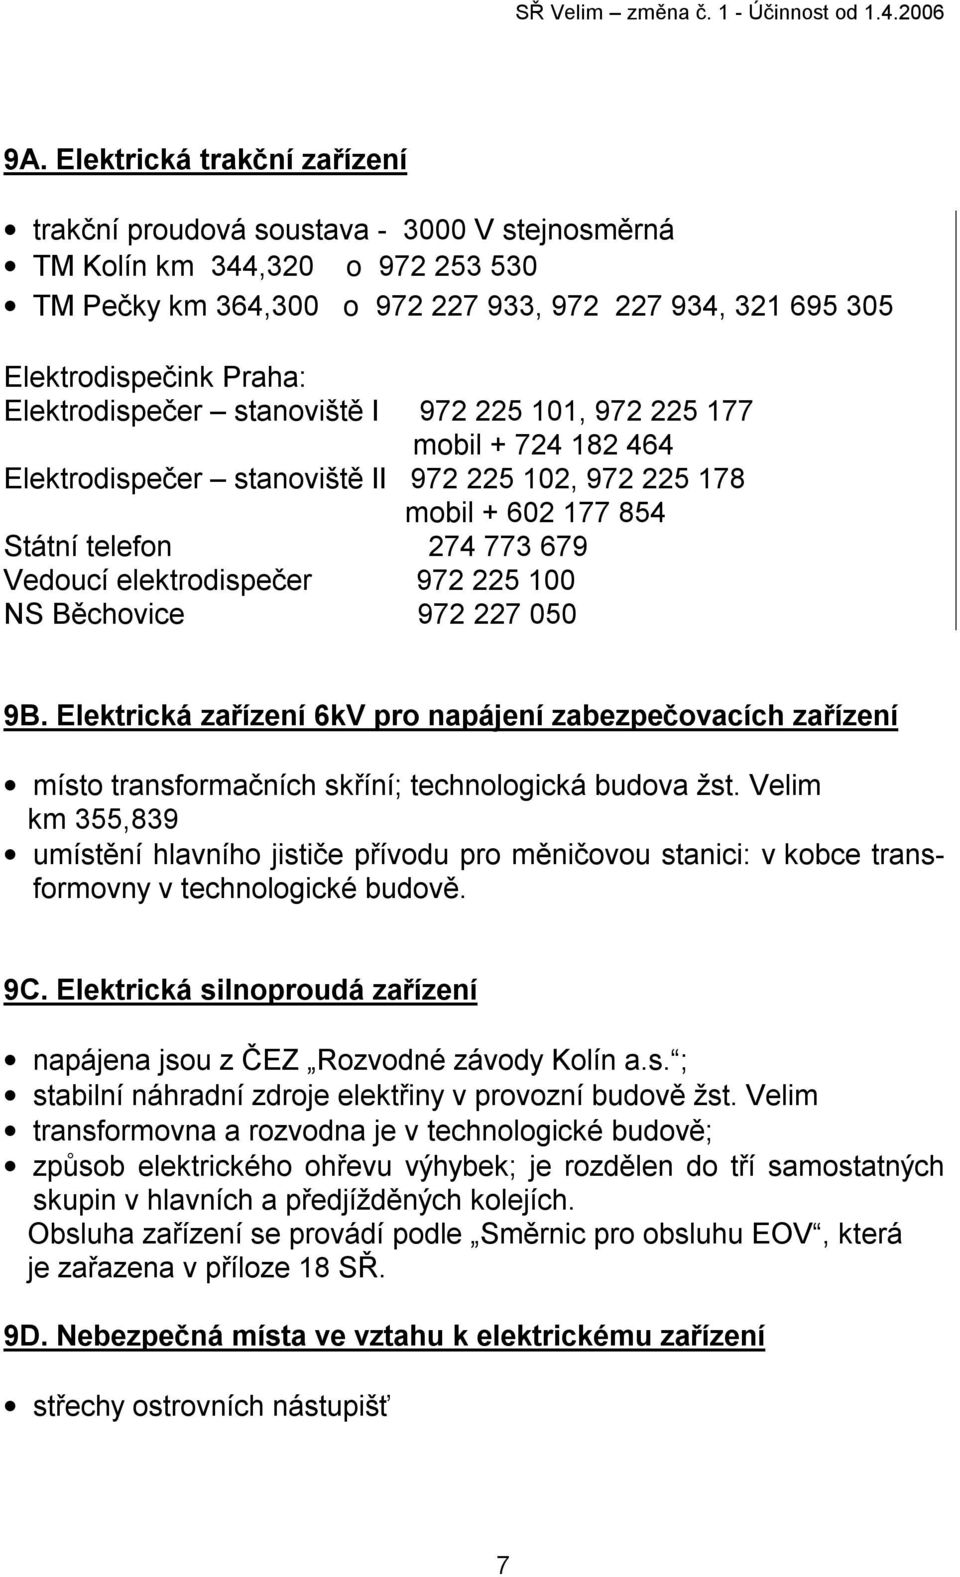 972 225 100 NS Běchovice 972 227 050 9B. Elektrická zařízení 6kV pro napájení zabezpečovacích zařízení místo transformačních skříní; technologická budova žst.